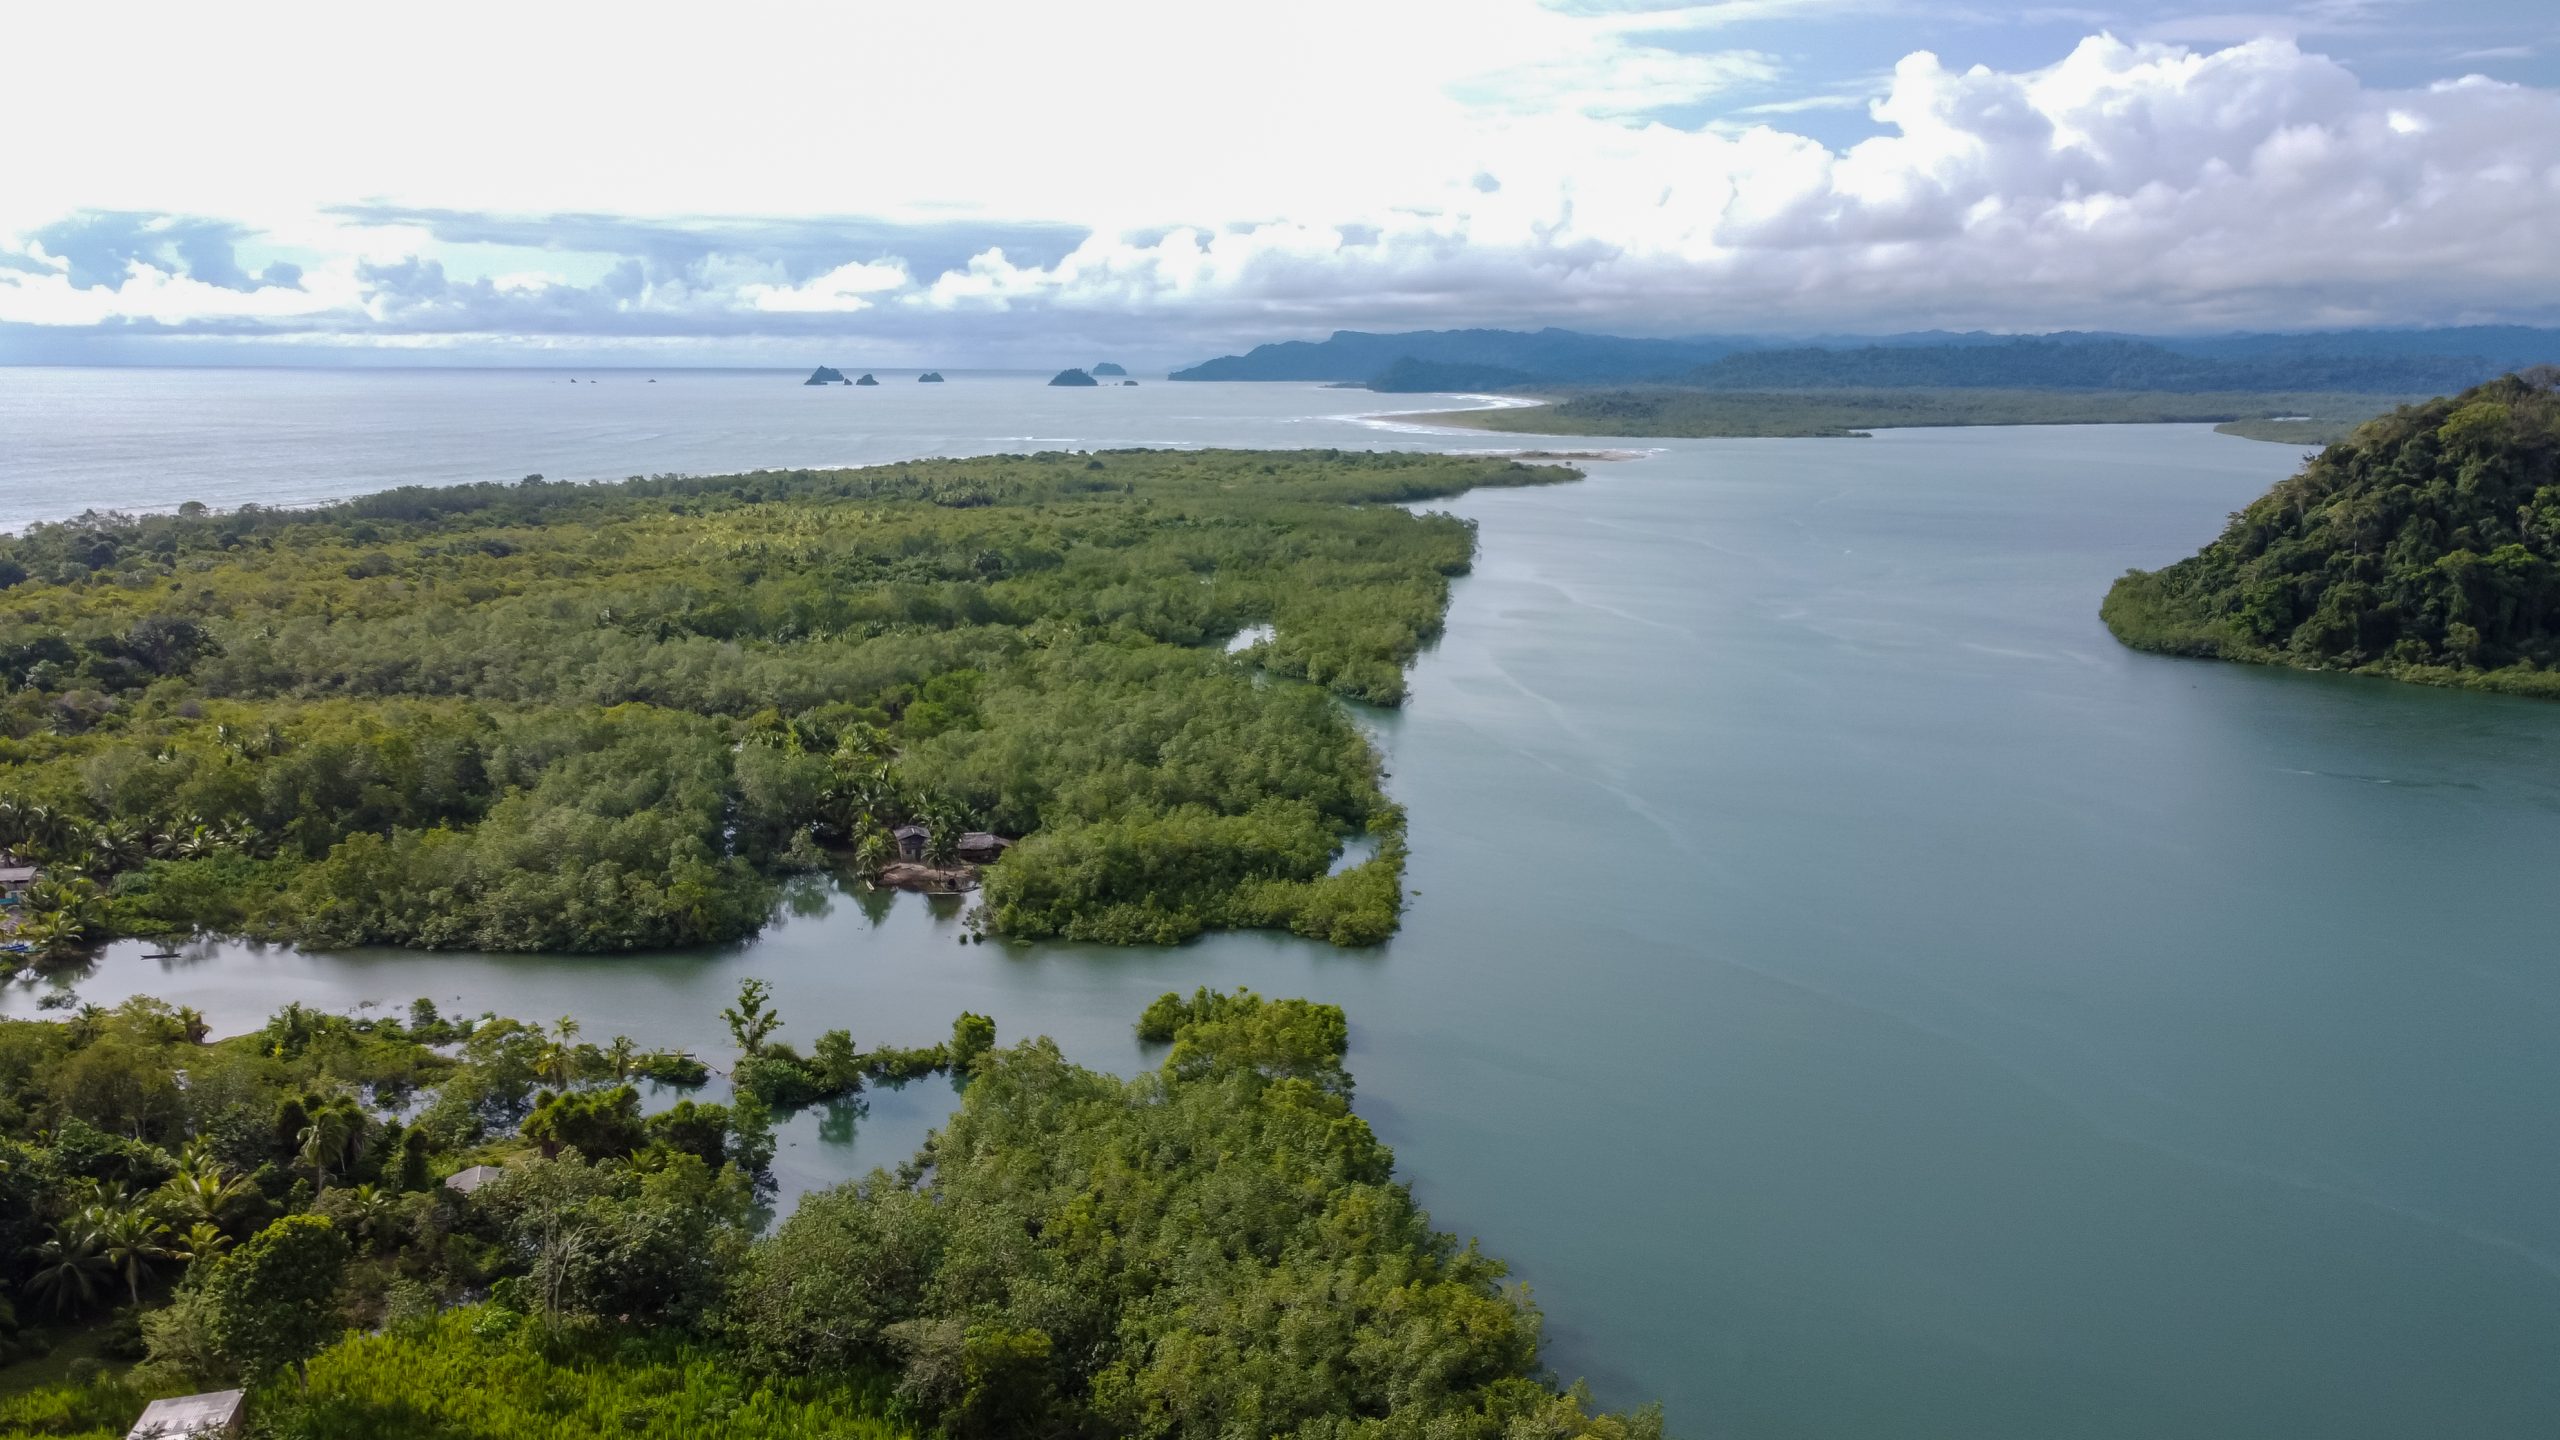 Minambiente celebra la declaratoria de la primera reserva de biósfera en el Pacífico